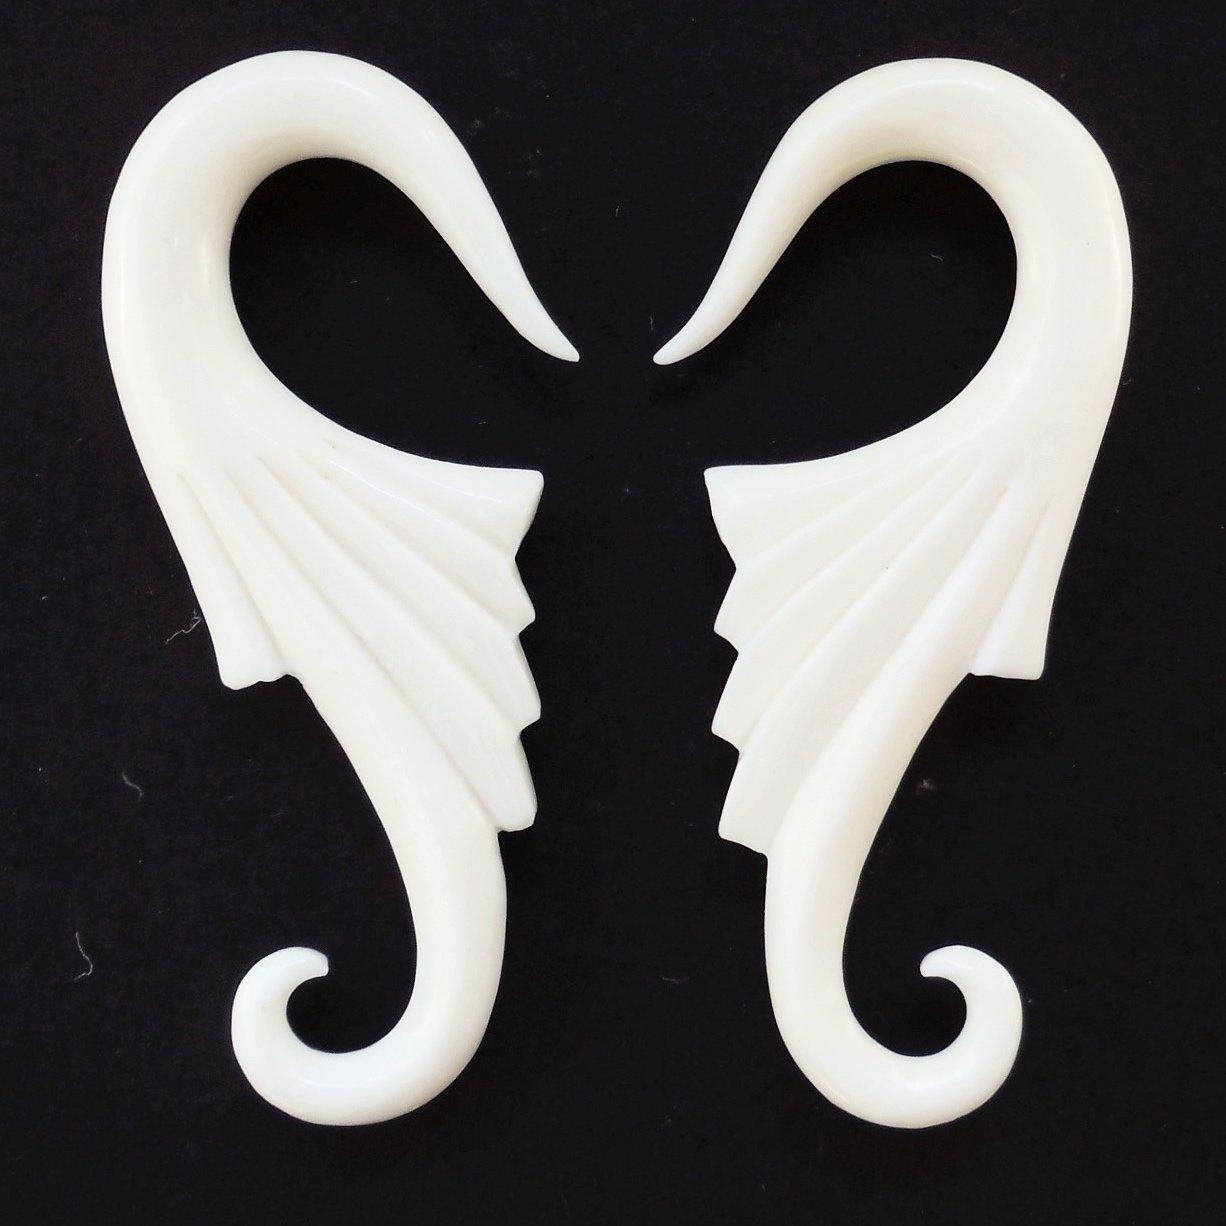 Body Jewelry :|: Nouveau Wings, white. Bone. 2 Gauge Earrings. Organic Jewelry. | 2 Gauge Earrings